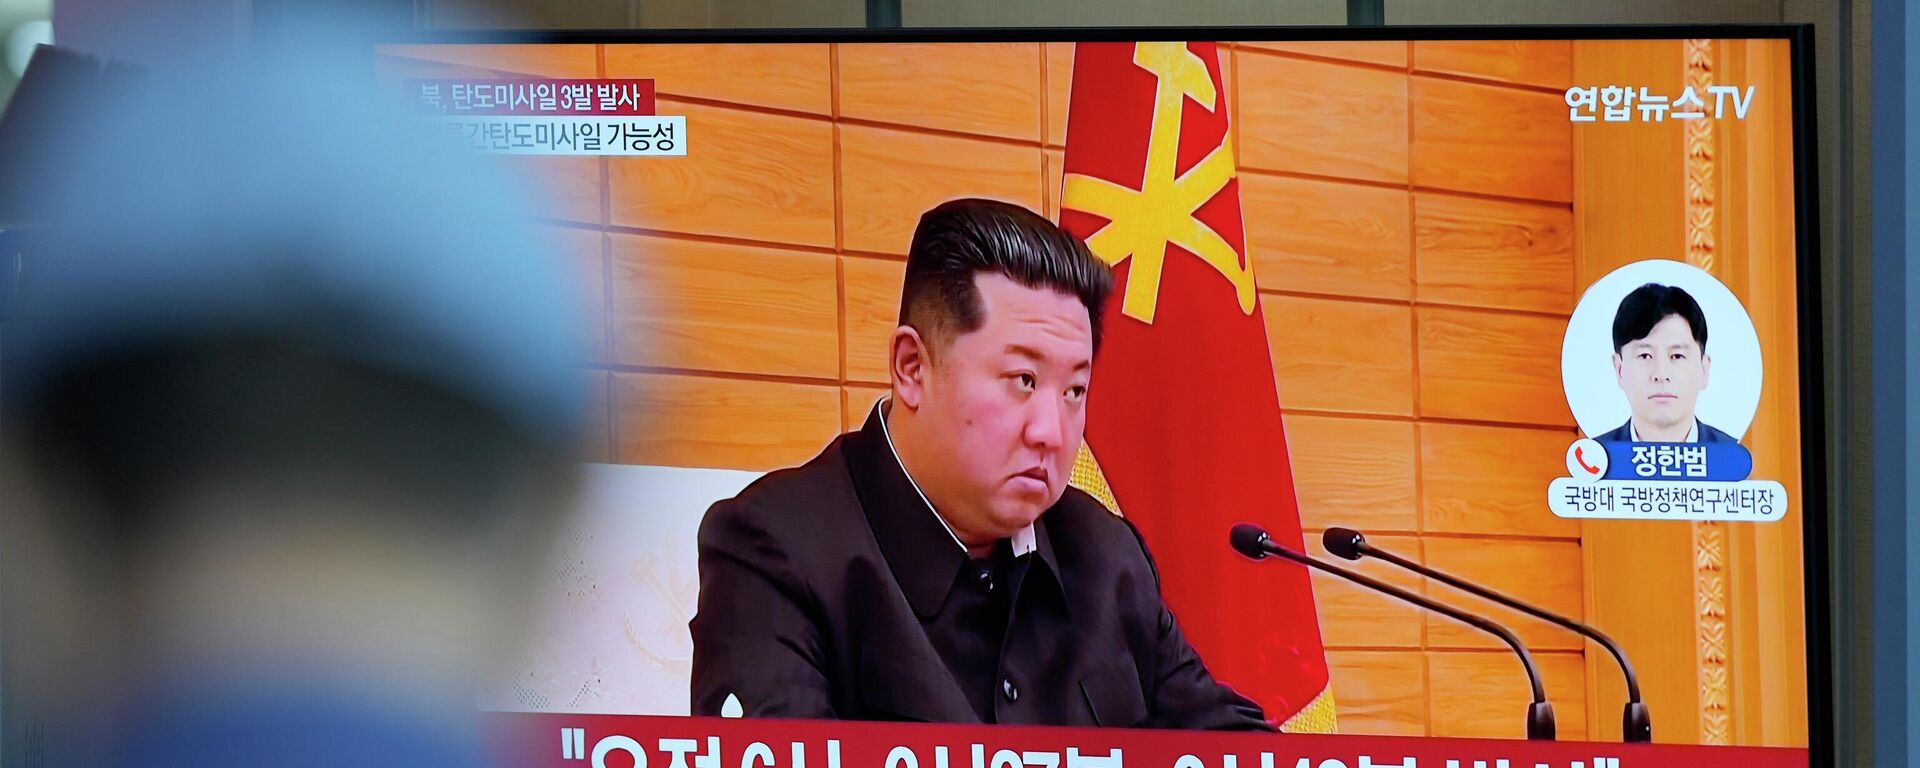 O líder norte-coreano, Kim Jong-un, aparece em uma tela em Seul, na Coreia do Sul, falando sobre o lançamento de um míssil pela Coreia do Norte, em 25 de maio de 2022 - Sputnik Brasil, 1920, 17.11.2022